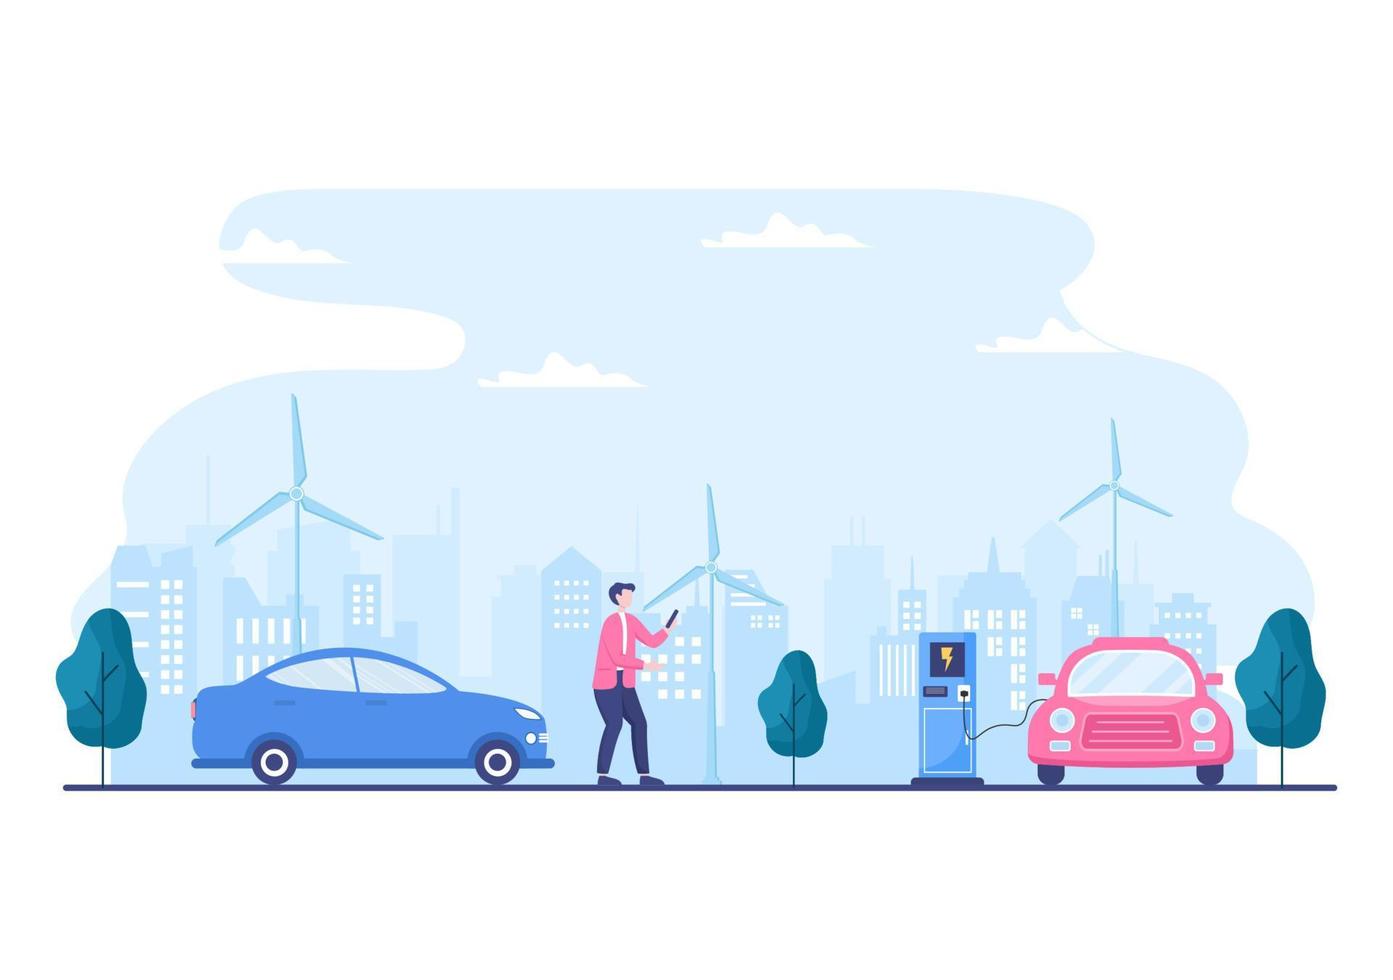 carregar baterias de carros elétricos com o conceito de carregador e plugues de cabo que usam meio ambiente verde, ecologia, sustentabilidade ou ar limpo. ilustração vetorial vetor